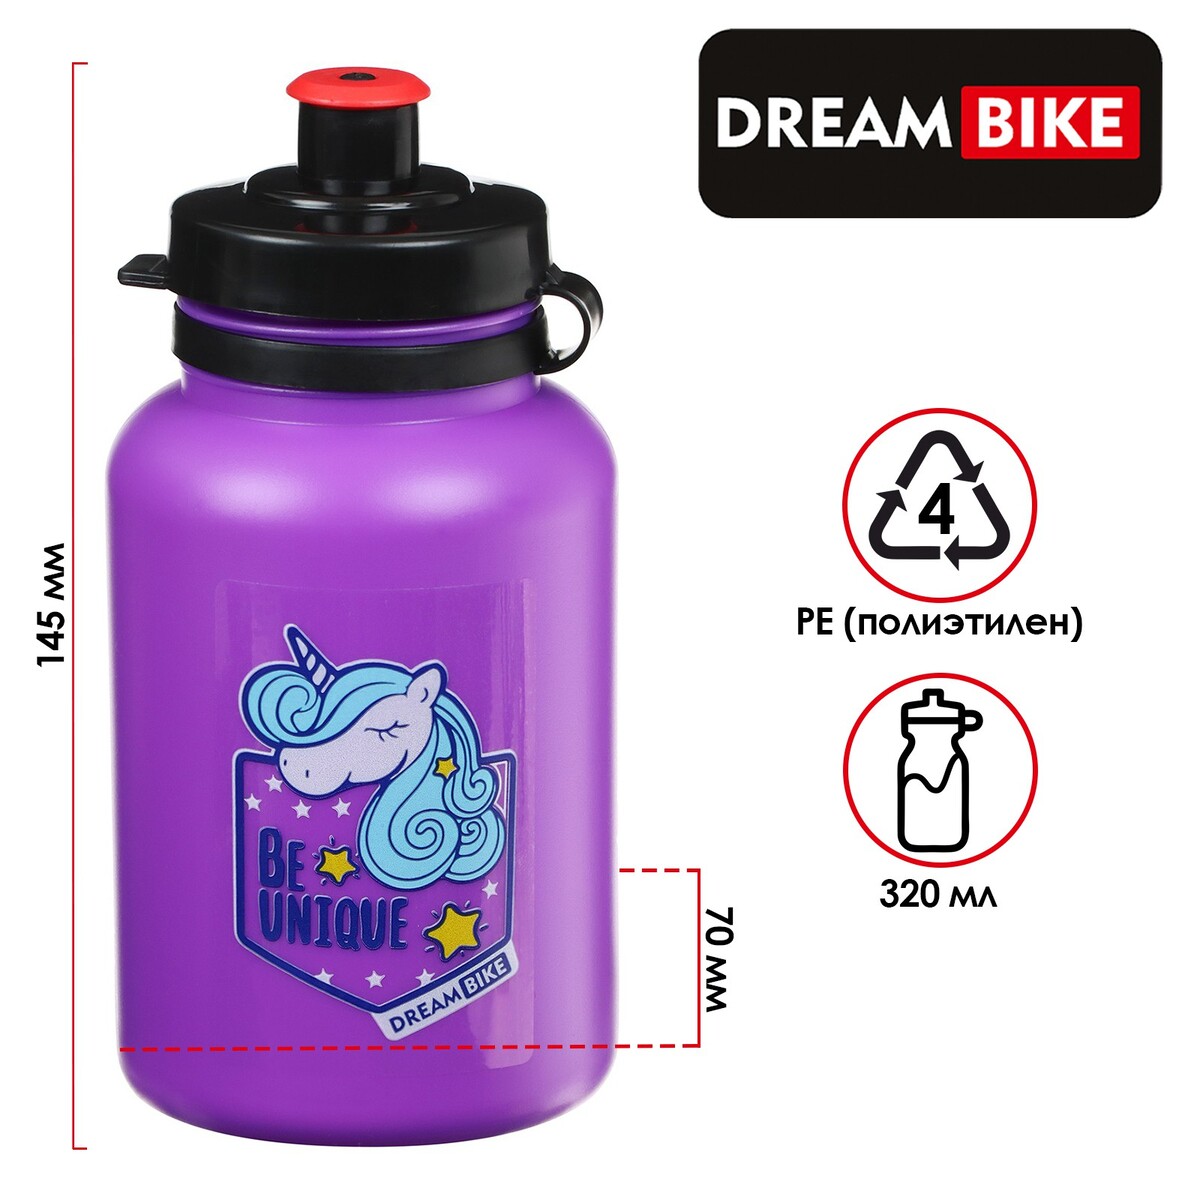 Велофляга dream bike, с флягодержателем, 320 мл, цвет фиолетовый велофляга dream bike с флягодержателем 320 мл фиолетовый